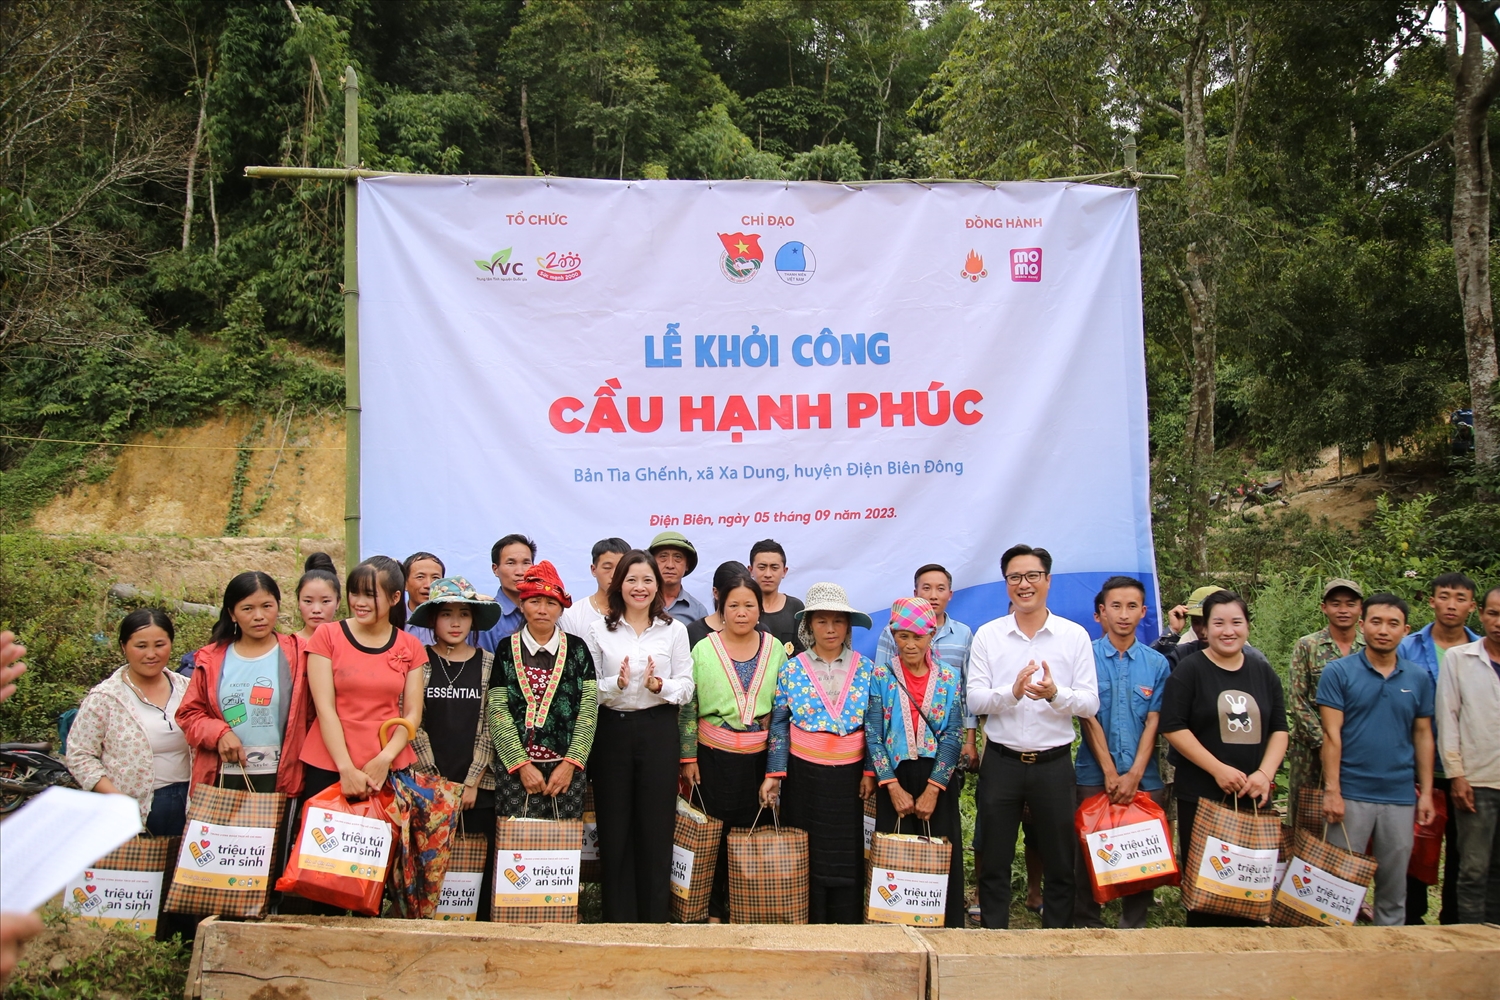 Các đại biểu dự Lễ khởi công "Cầu hạnh phúc" và tặng quà cho các hộ có hoàn cảnh khó khăn tại xã Xa Dung, huyện Điện Biên Đông